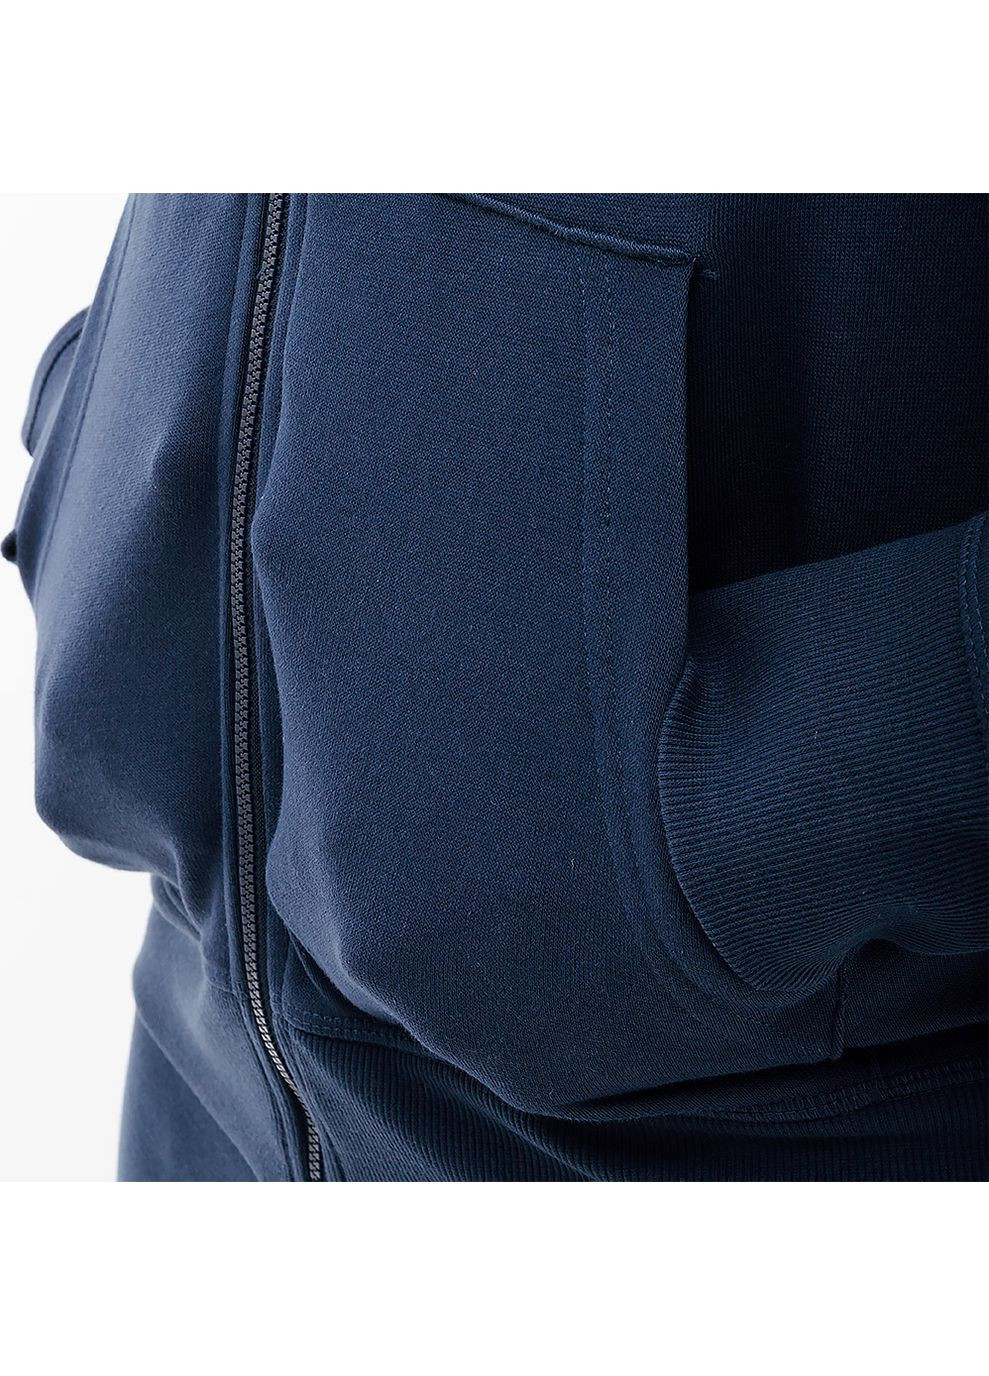 Синяя демисезонная мужская куртка essentials stacked logo fz синий New Balance